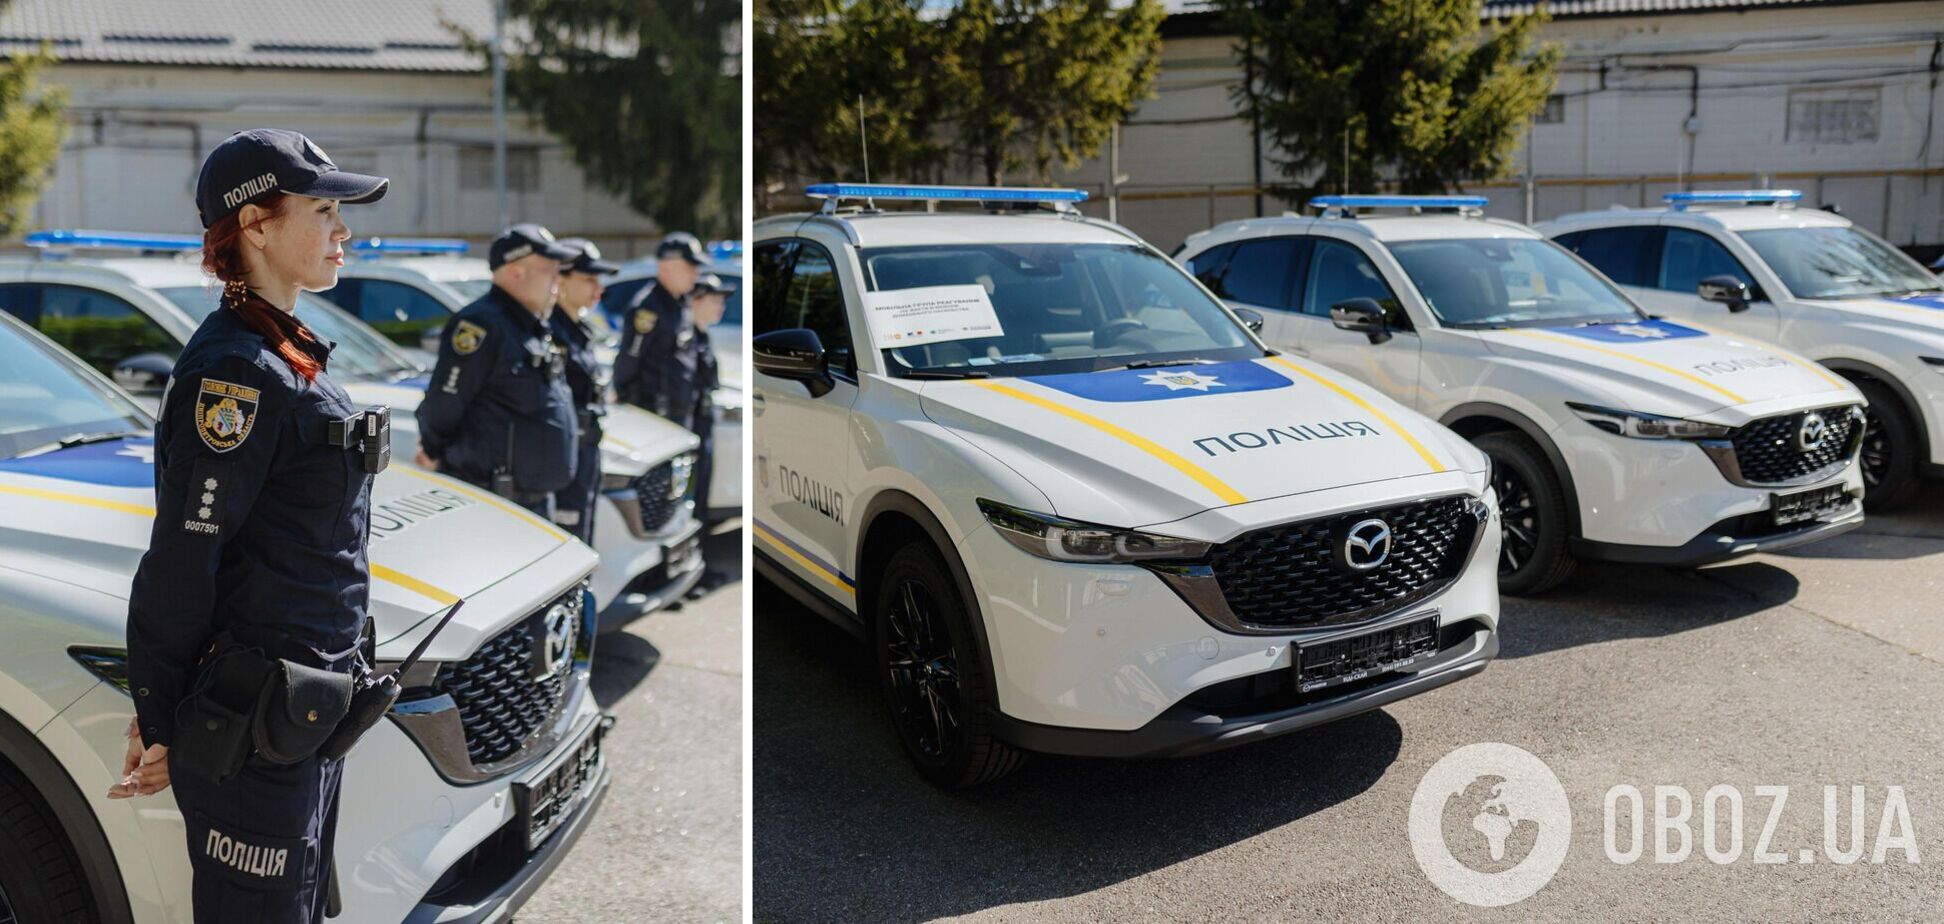 Франція передала Україні 13 автомобілів для мобільних груп поліції з протидії домашньому насильству